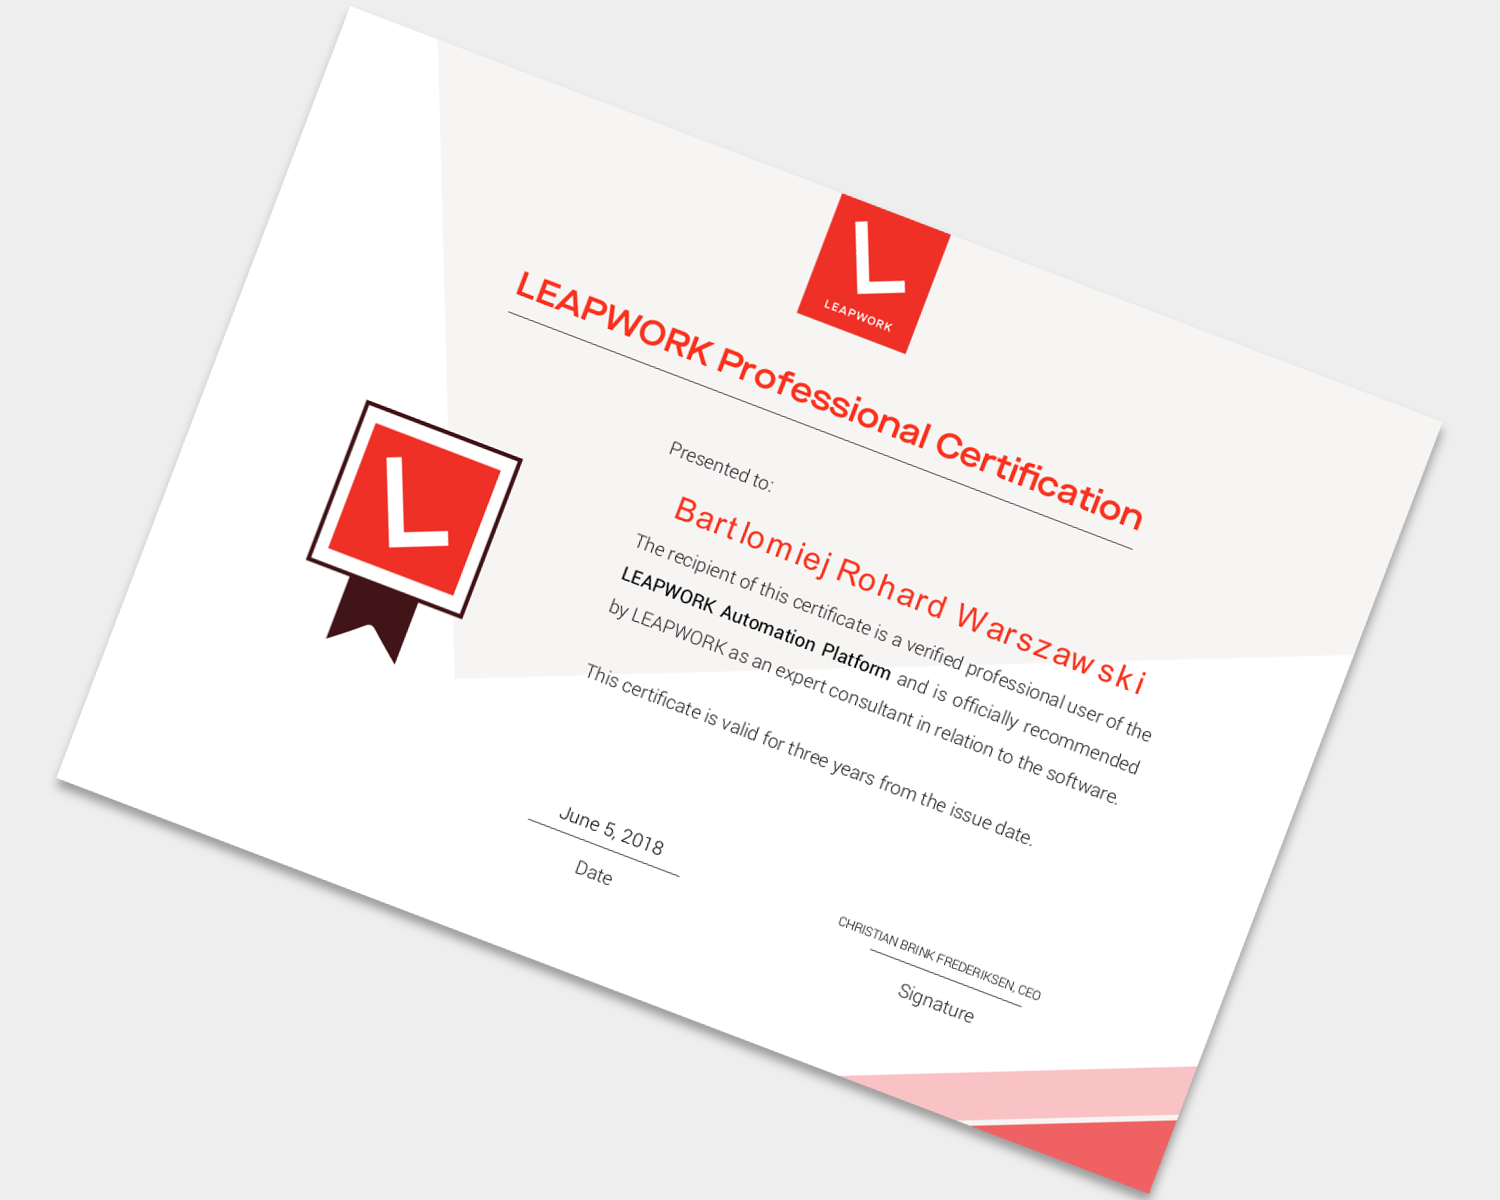 LeapWork certificate